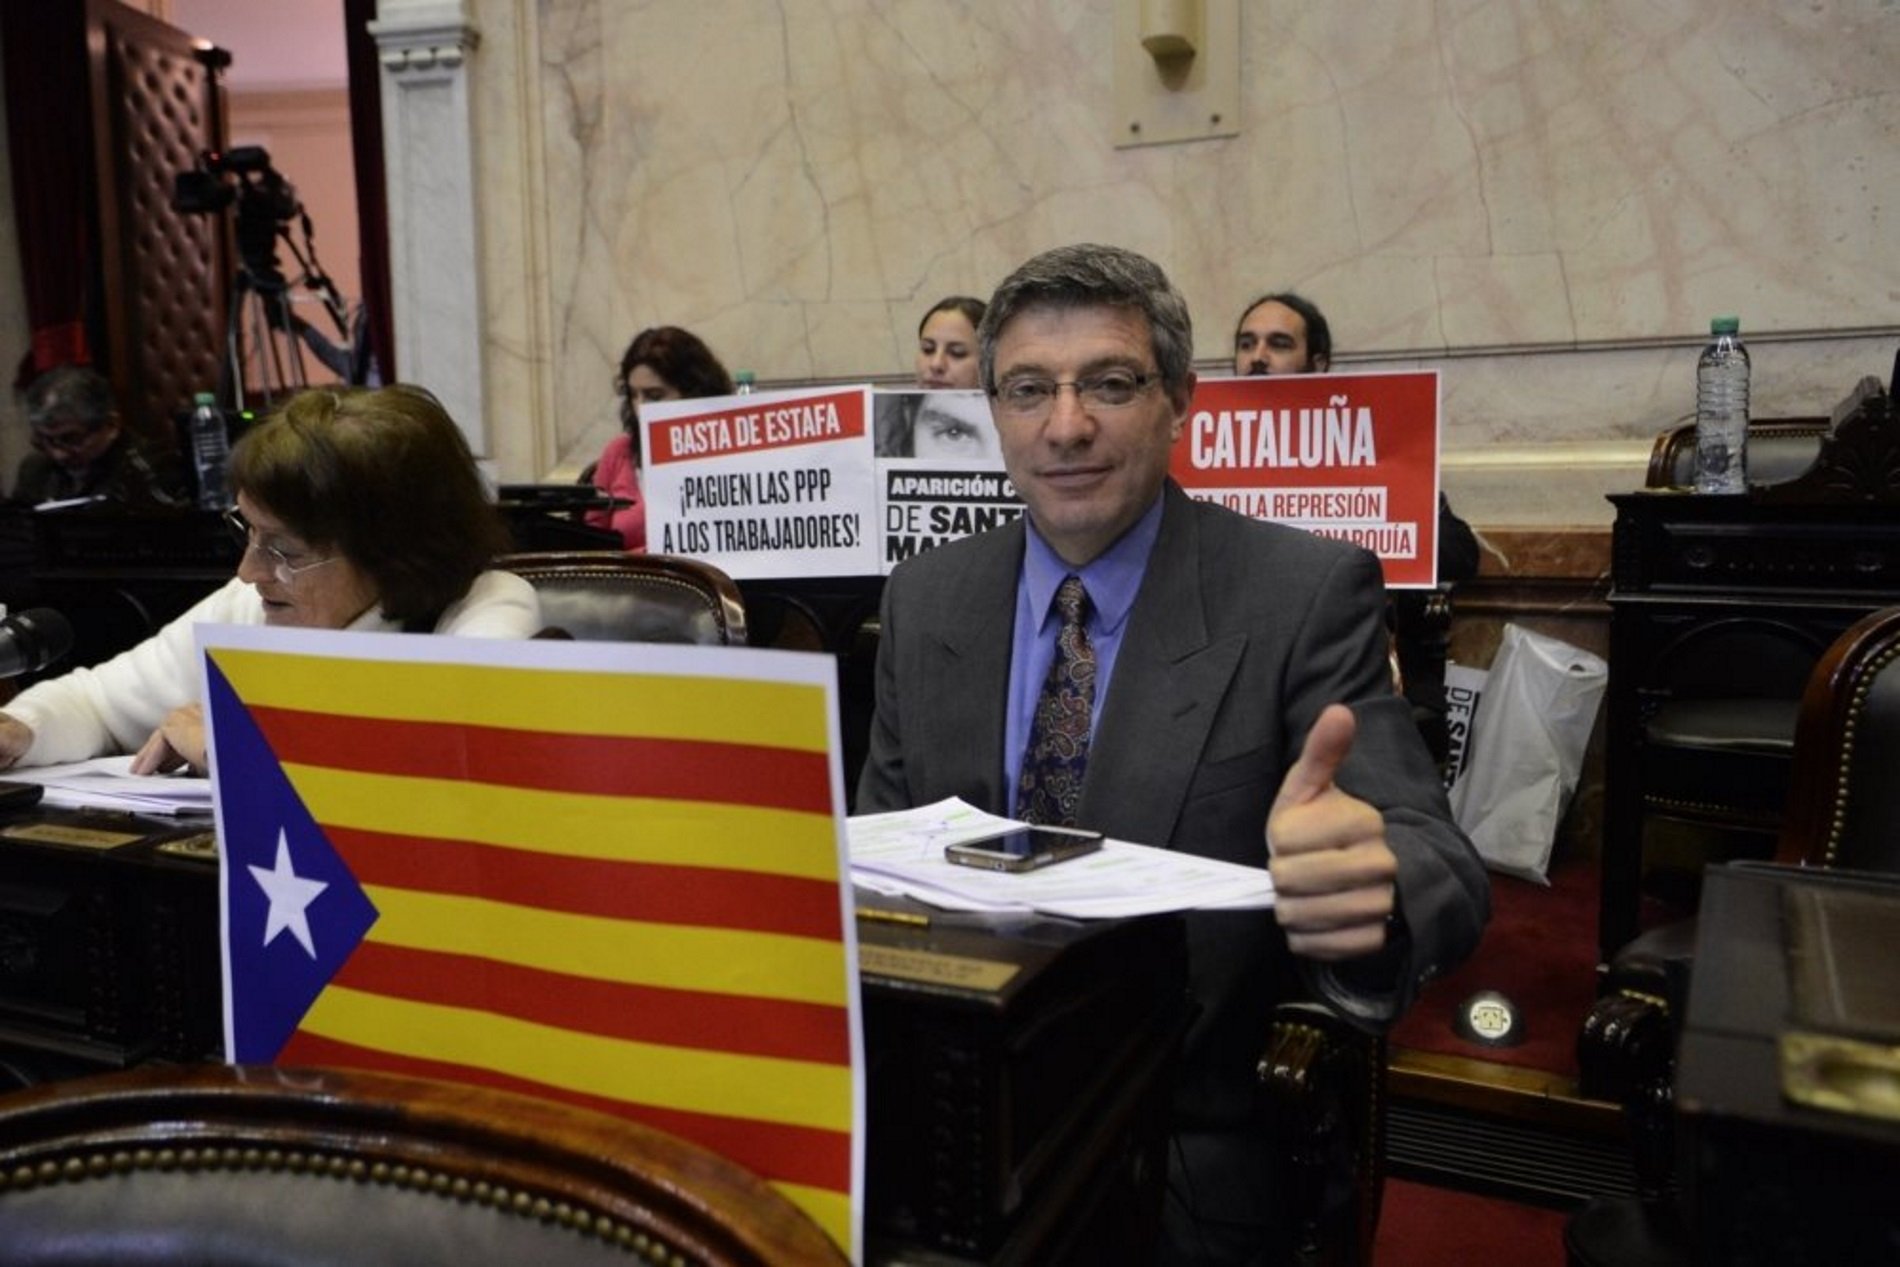 Un diputado argentino presenta una moción para reconocer a Catalunya